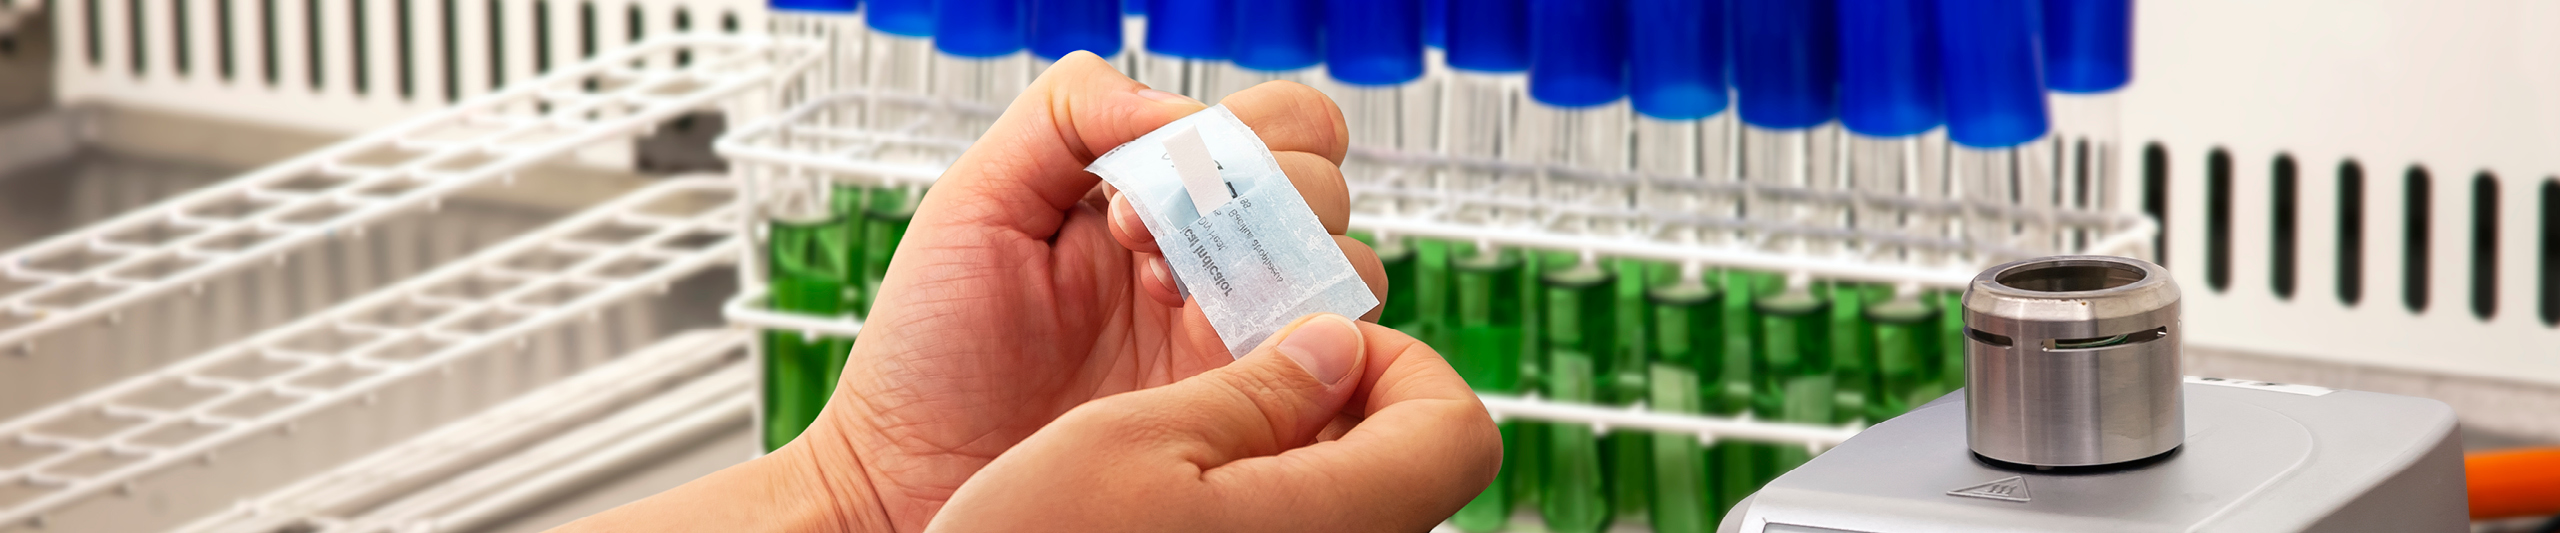 Et billede af emballagen fra Steris med de biologiske indikatorer (Sporadi). I baggrunden ses reagensglas med blå hætter og grøn væske til bakteriesporing.